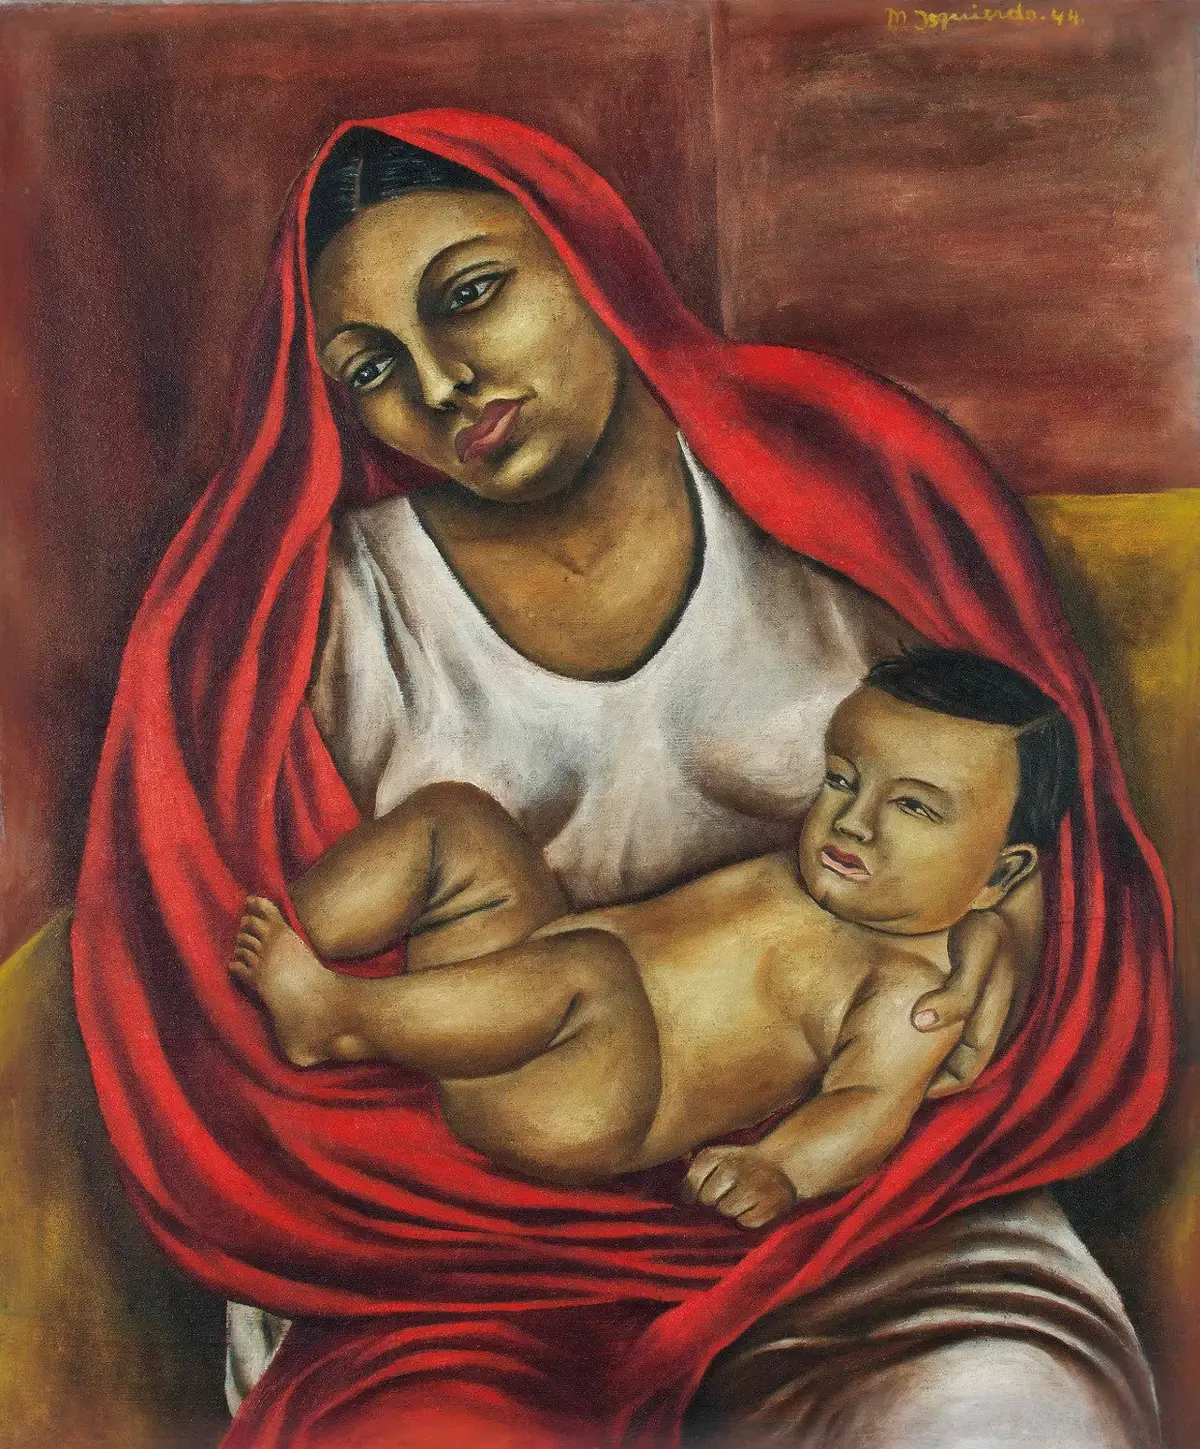 María Izquierdo, "Maternité", 1944